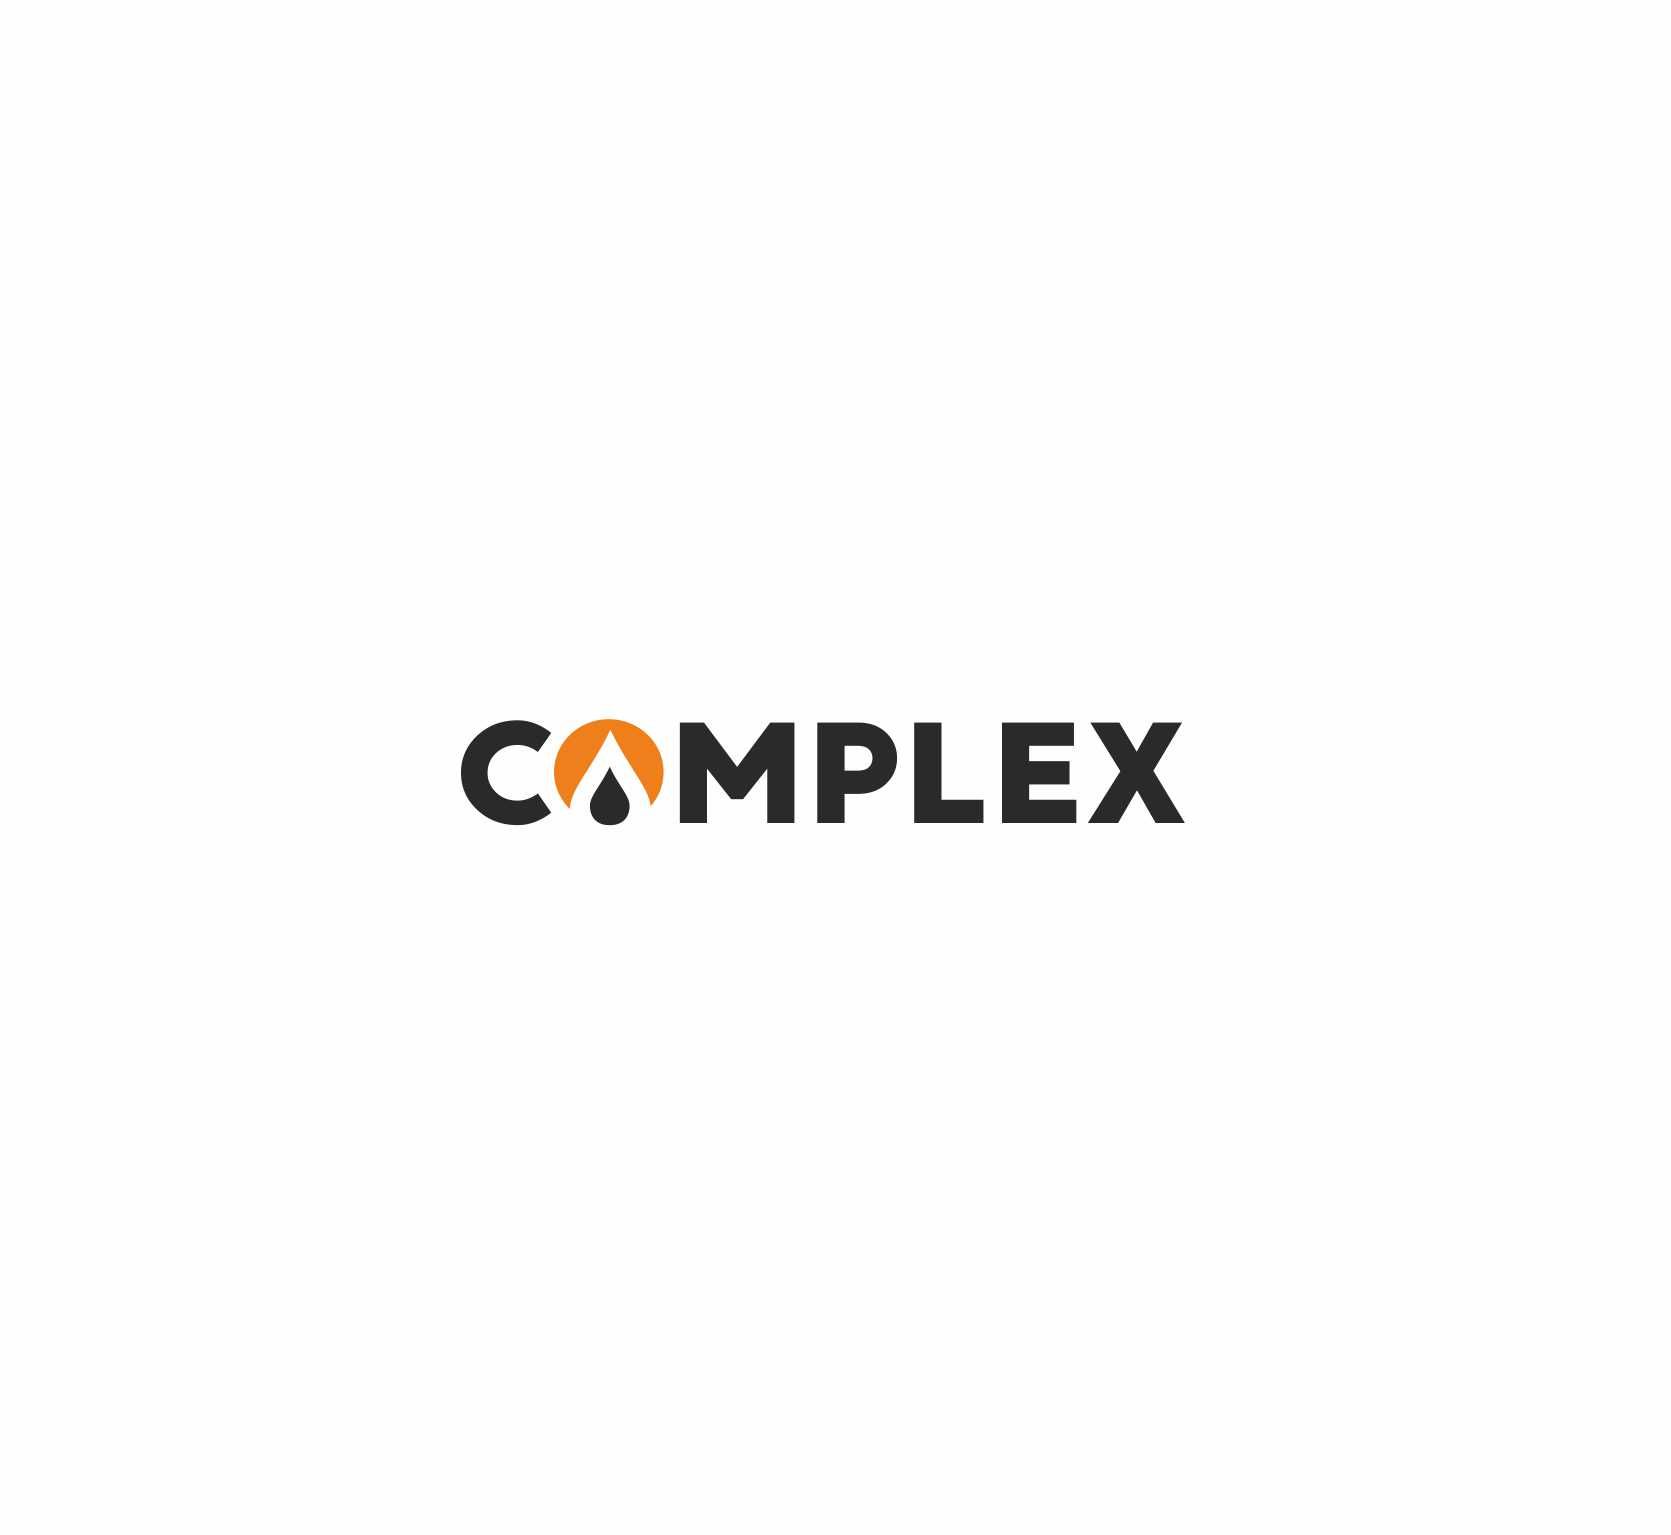 Логотип для COMPLEX - дизайнер sentjabrina30